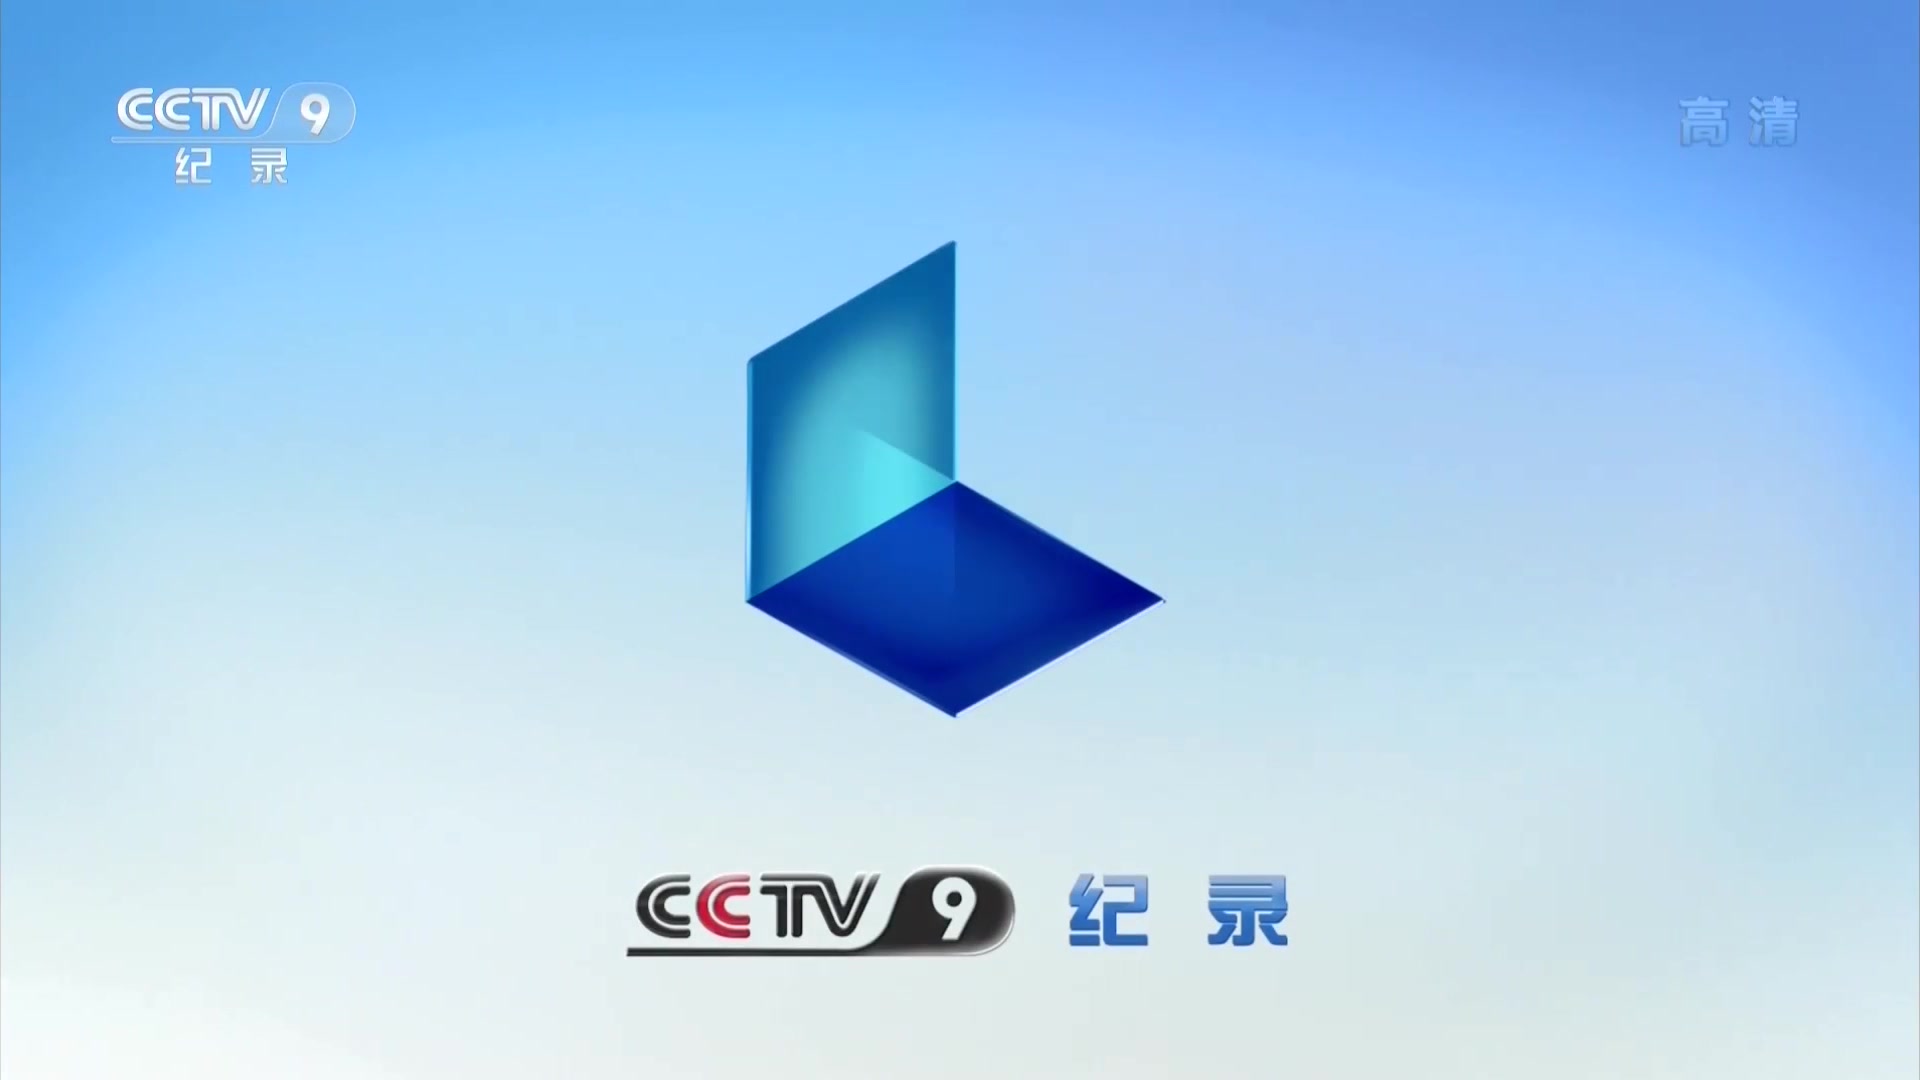 中央电视台纪录频道2012年频道id